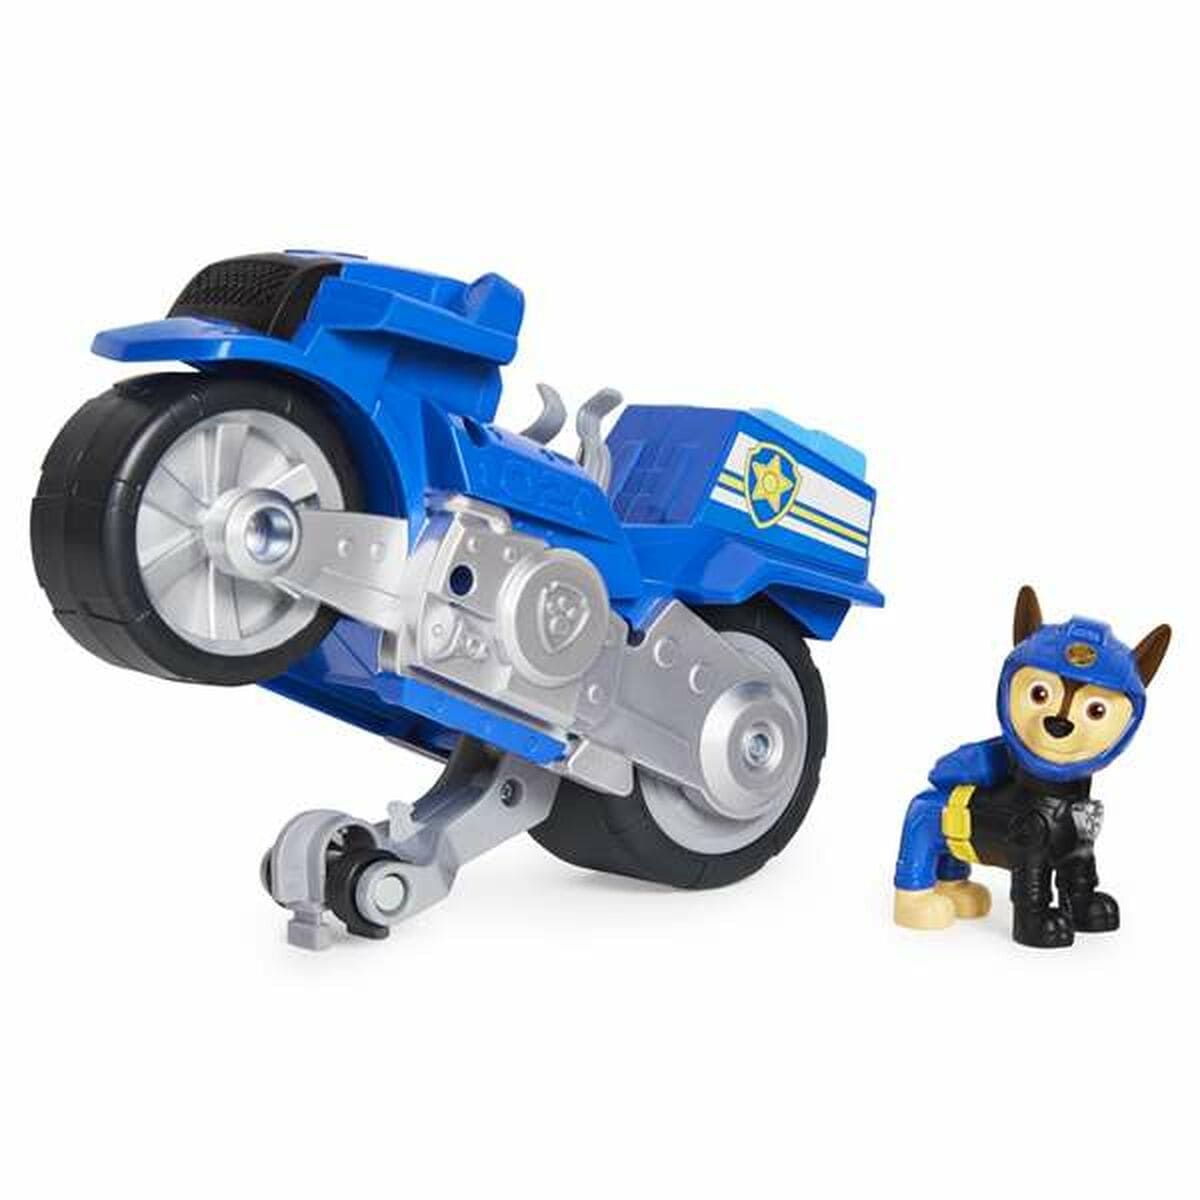 The Paw Patrol Spielzeug | Kostüme > Spielzeug und Spiele > Weiteres spielzeug Motorrad The Paw Patrol Pups Motorcycke 20 x 8 x 20 cm